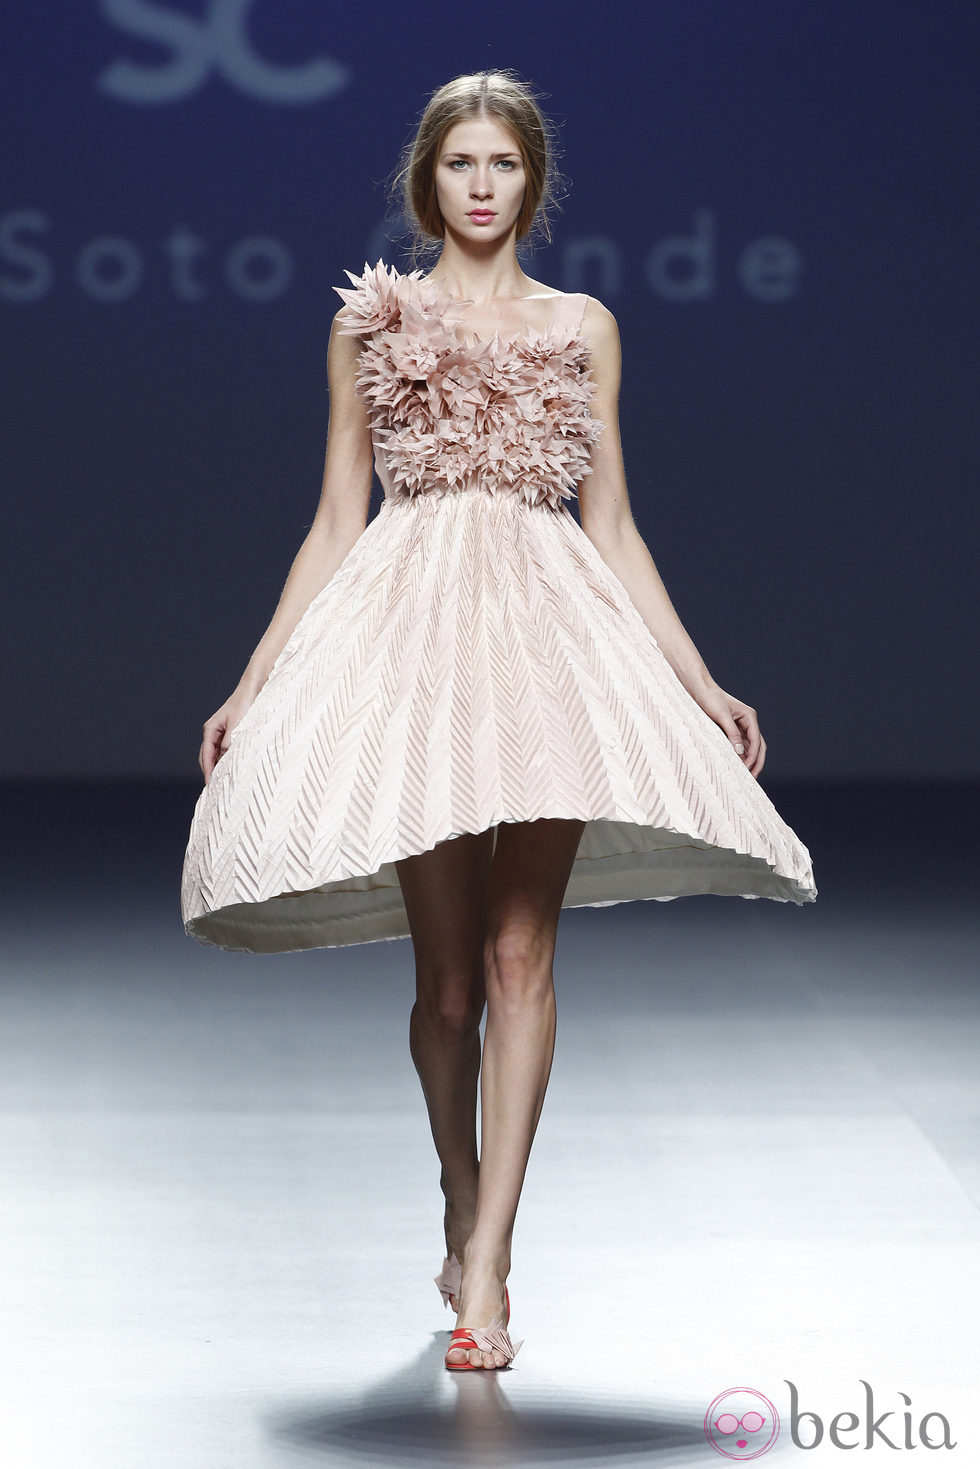 Vestido con falda de campana de la colección primavera/verano 2014 de Eva Soto Conde en el EGO Madrid Fashion Week.